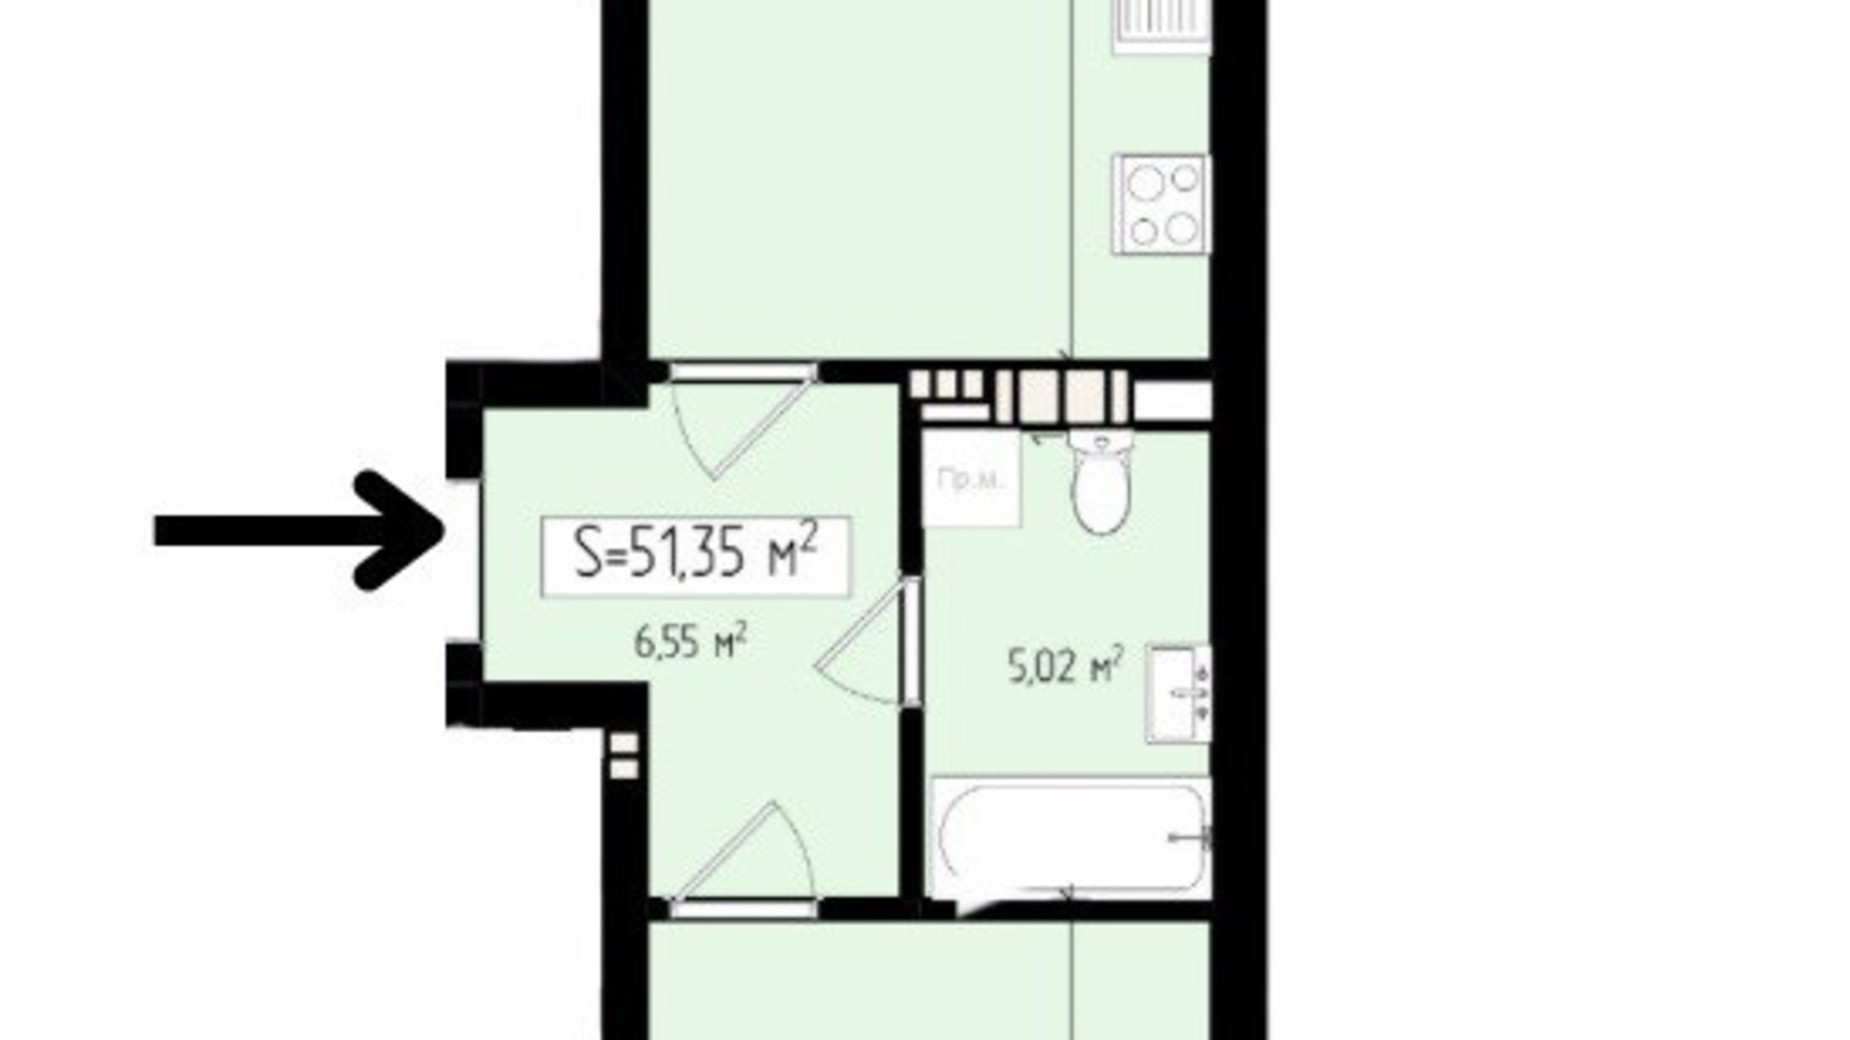 Планировка 1-комнатной квартиры в ЖК Mala Praha 51.35 м², фото 539585